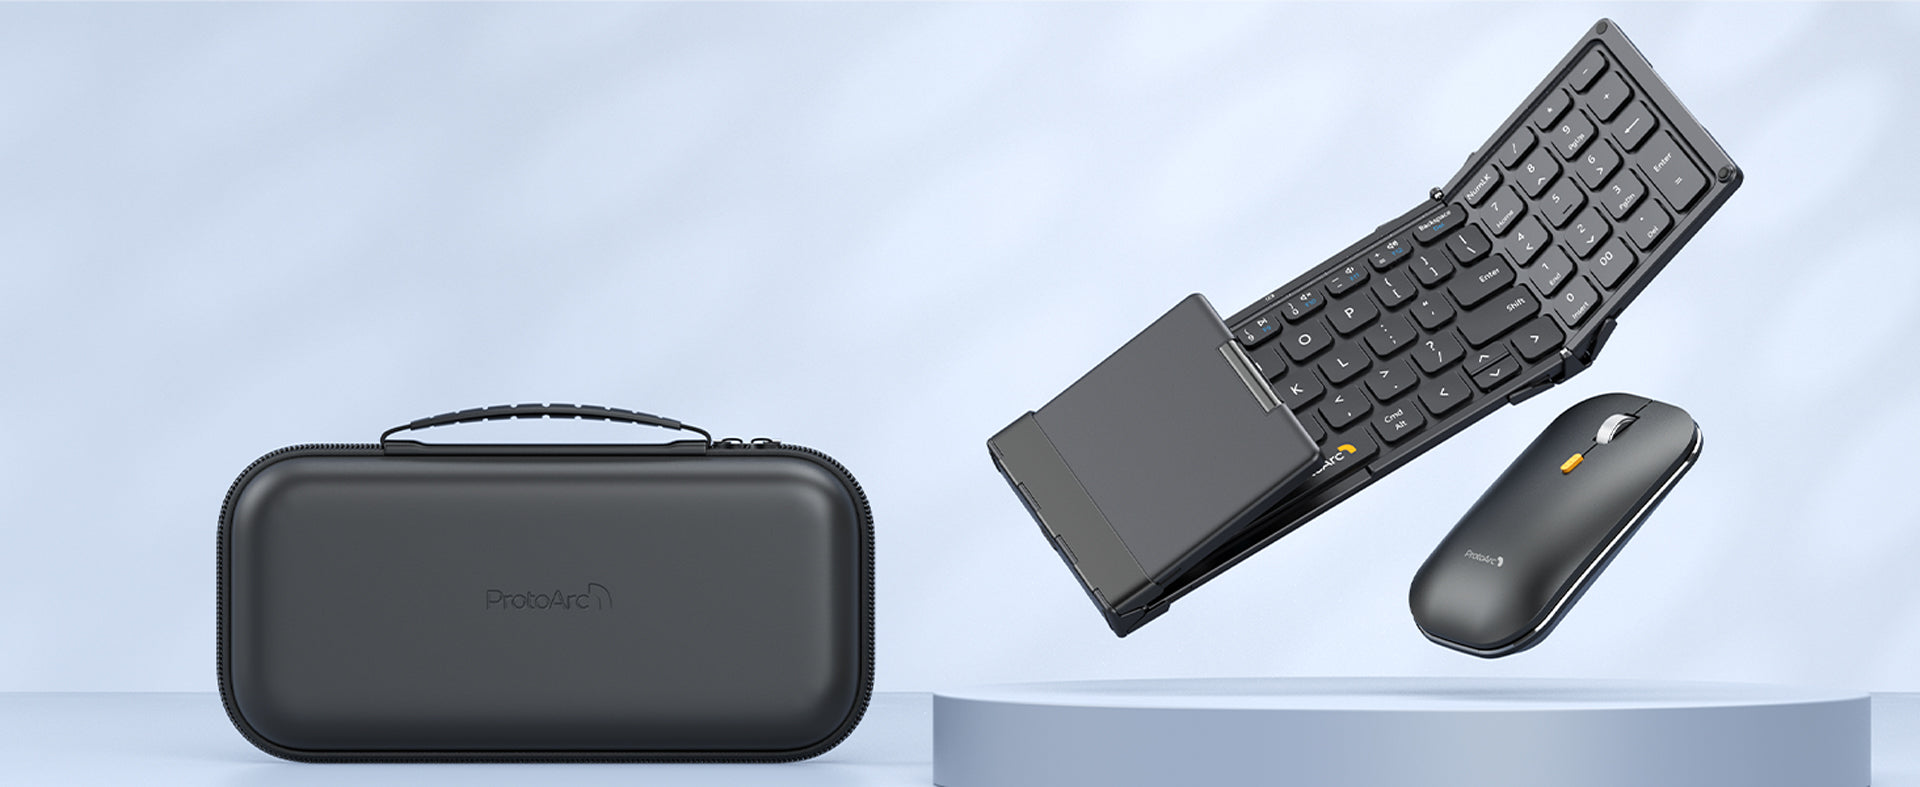 XKM01 mini Keyboard and Mouse Combo